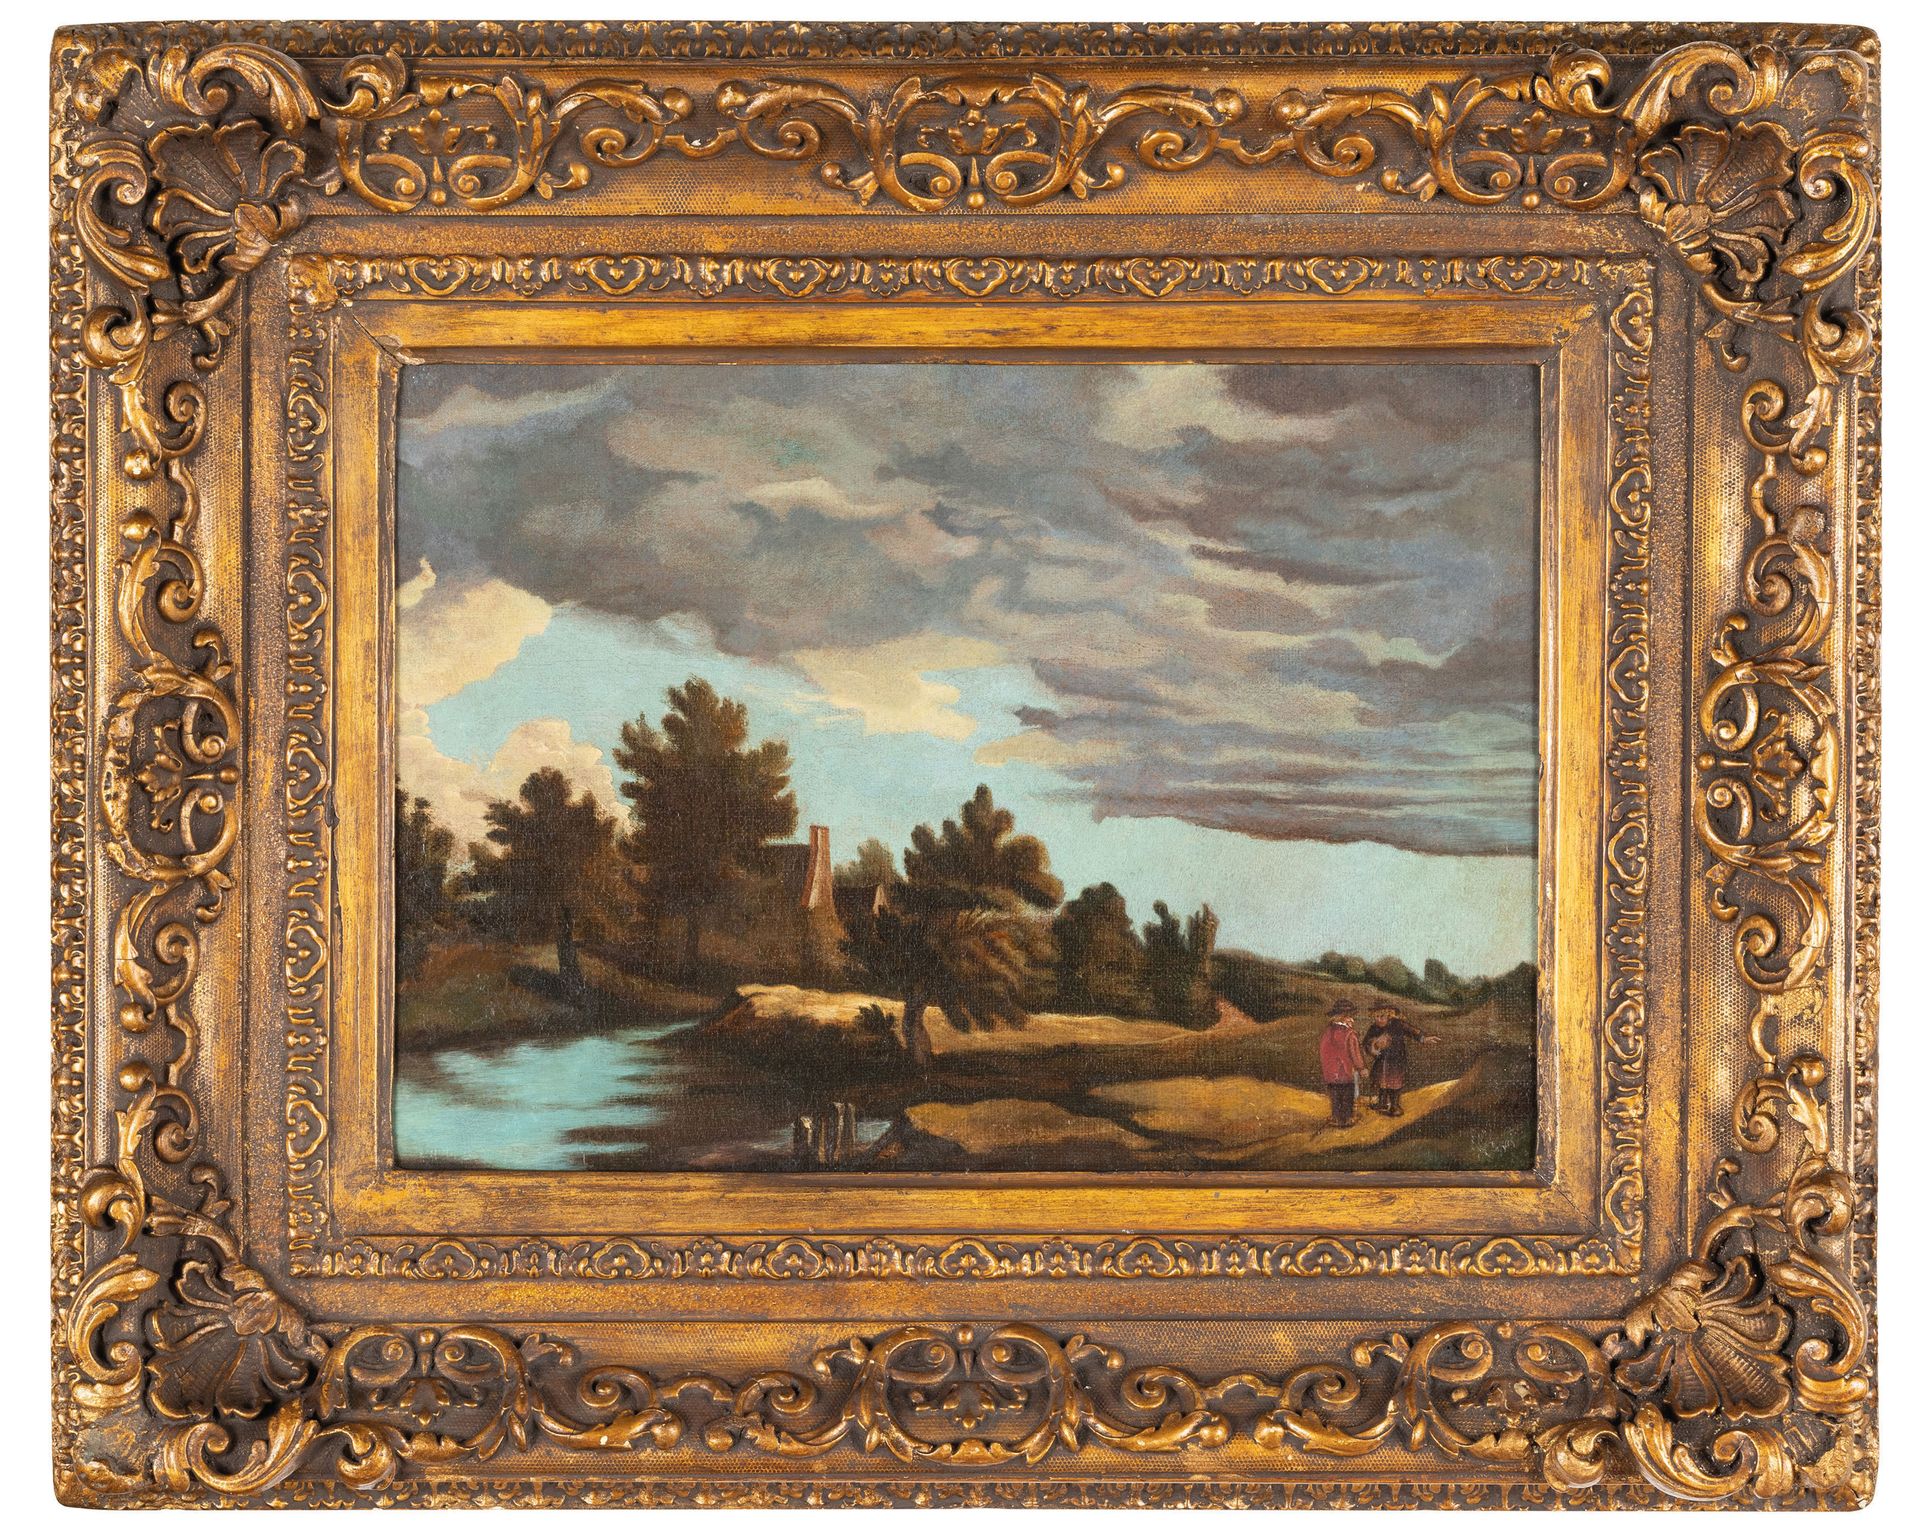 PITTORE DEL XVIII SECOLO Paesaggio lacustre con figure
Olio su tela, cm 26X37